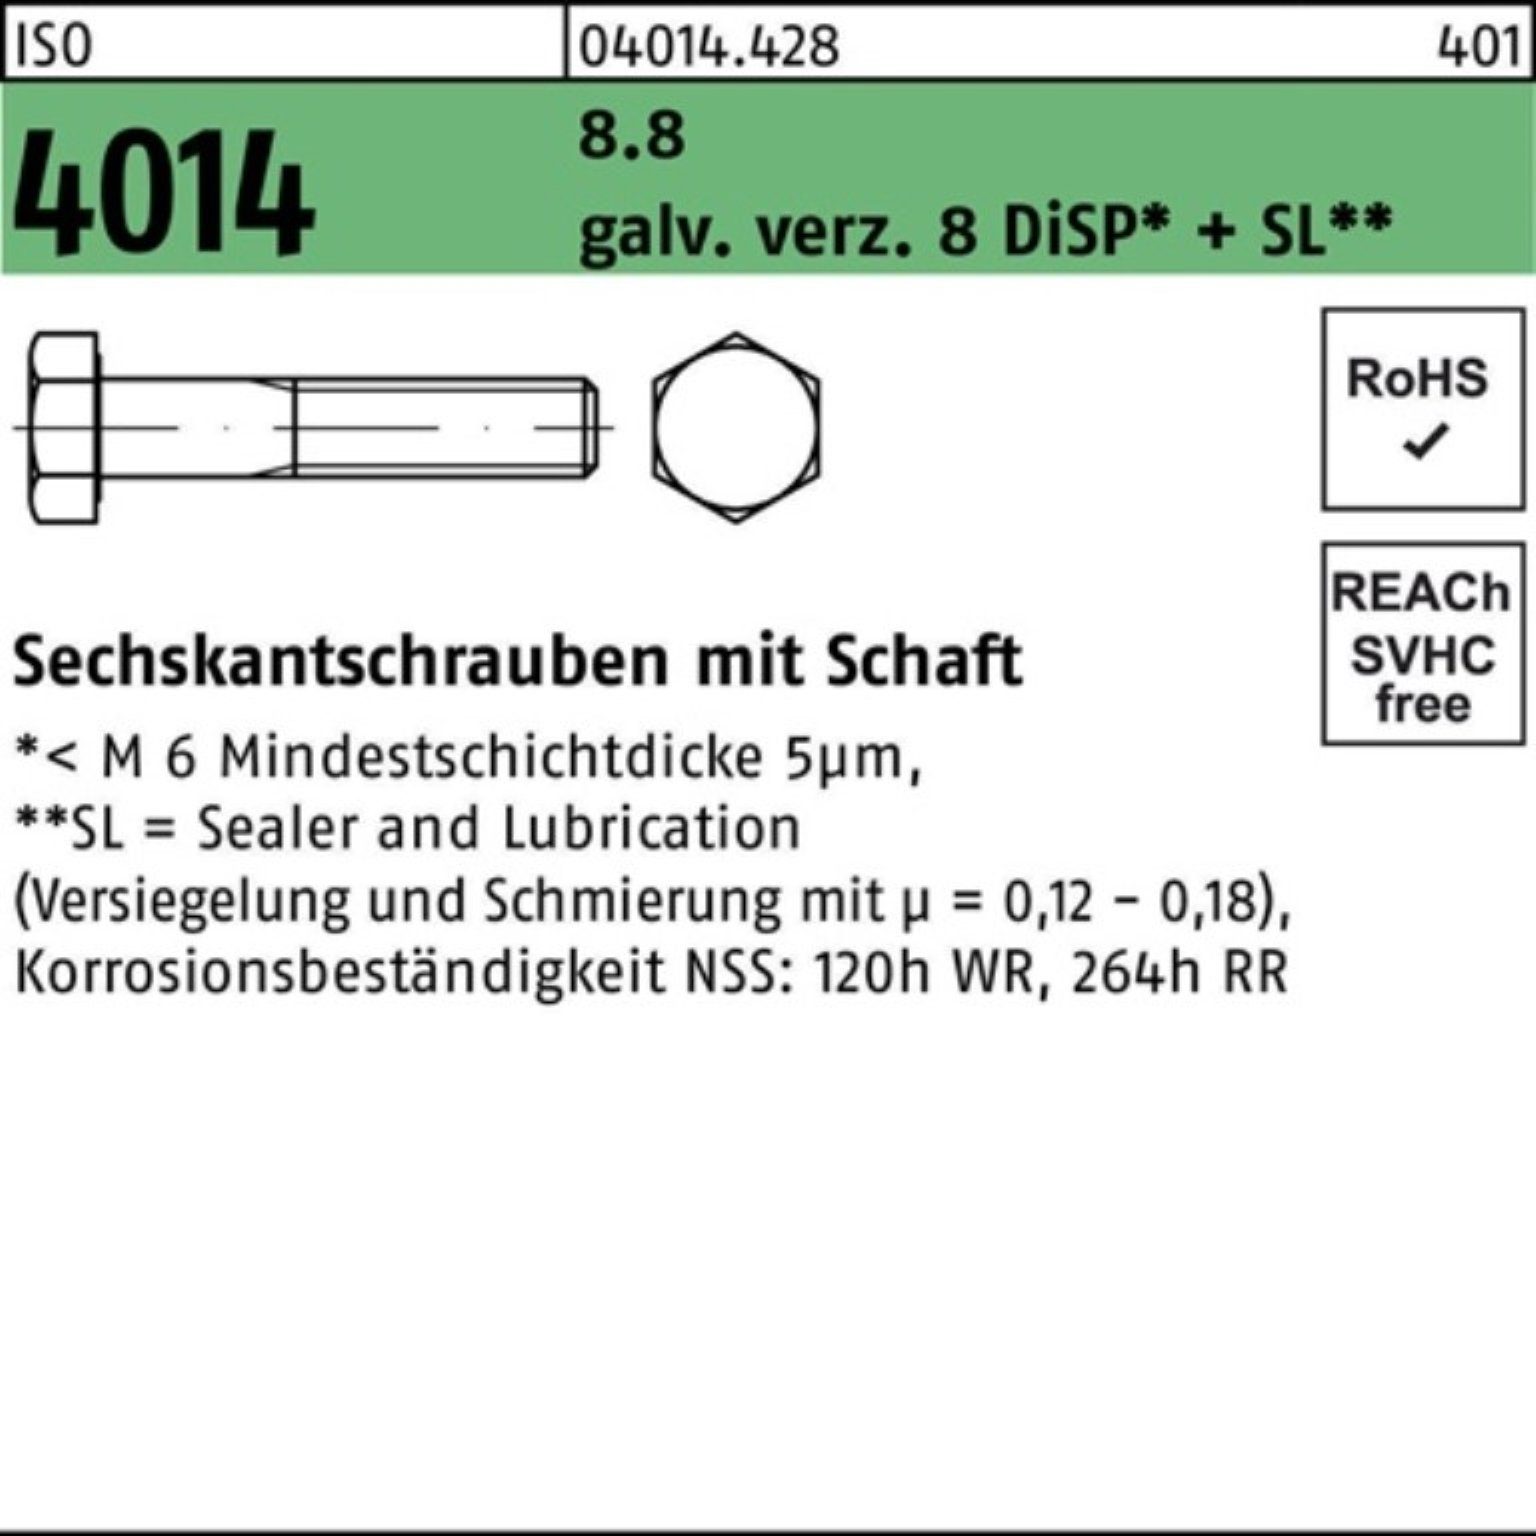 Bufab Sechskantschraube Sechskantschraube ISO 8.8 galv.verz. 100er Pack D M14x85 Schaft 4014 8